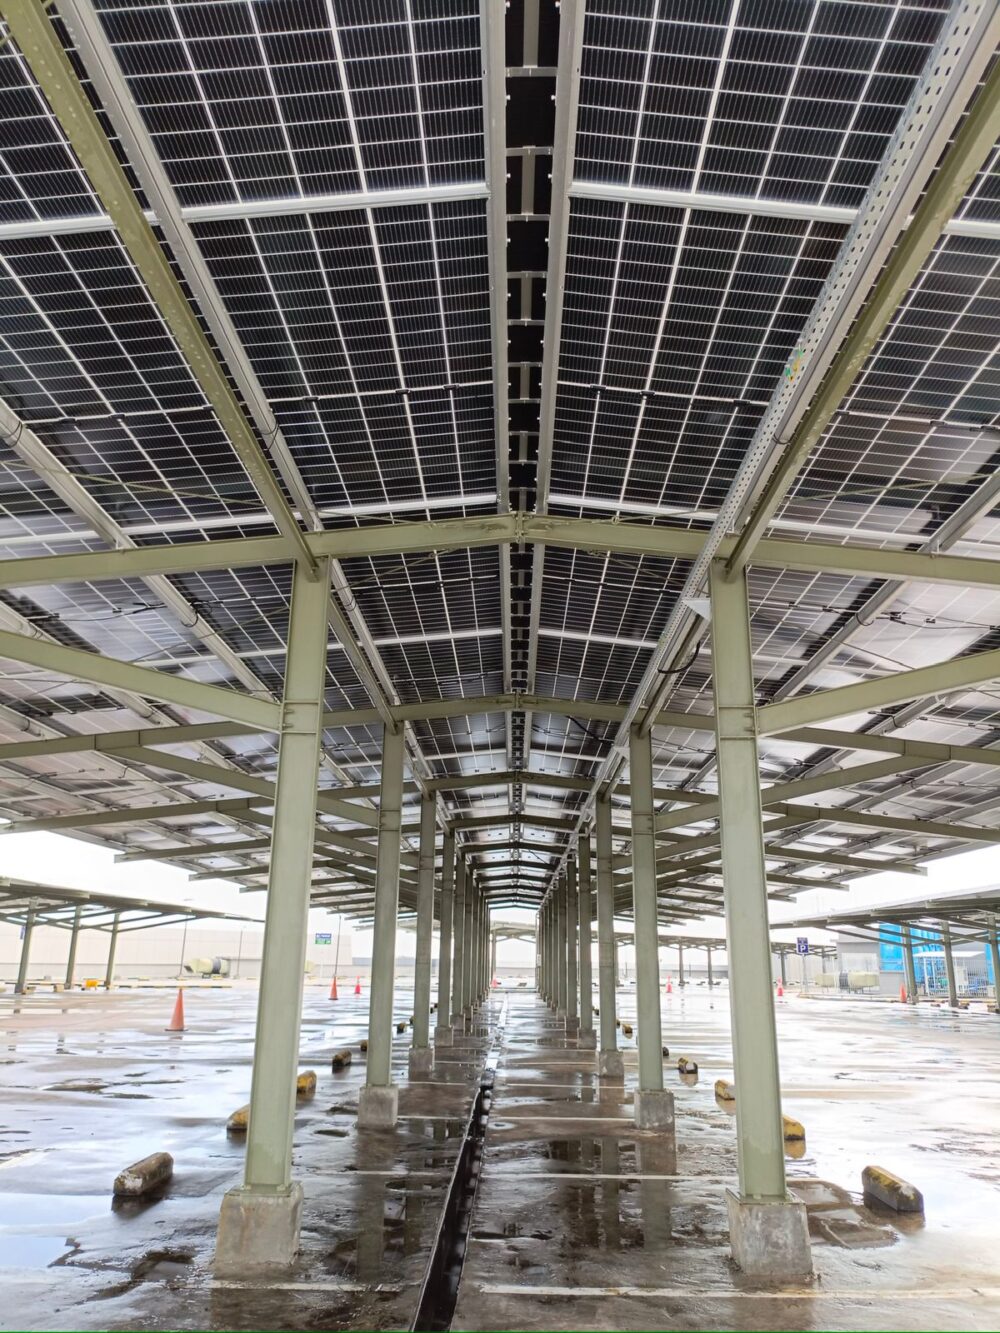 Instalasi PLTS yang terpasang di Gaia Bumi Raya City melalui inovasi solar carport, juga sebagai atap pada area parkir mall. (Foto: Indri)